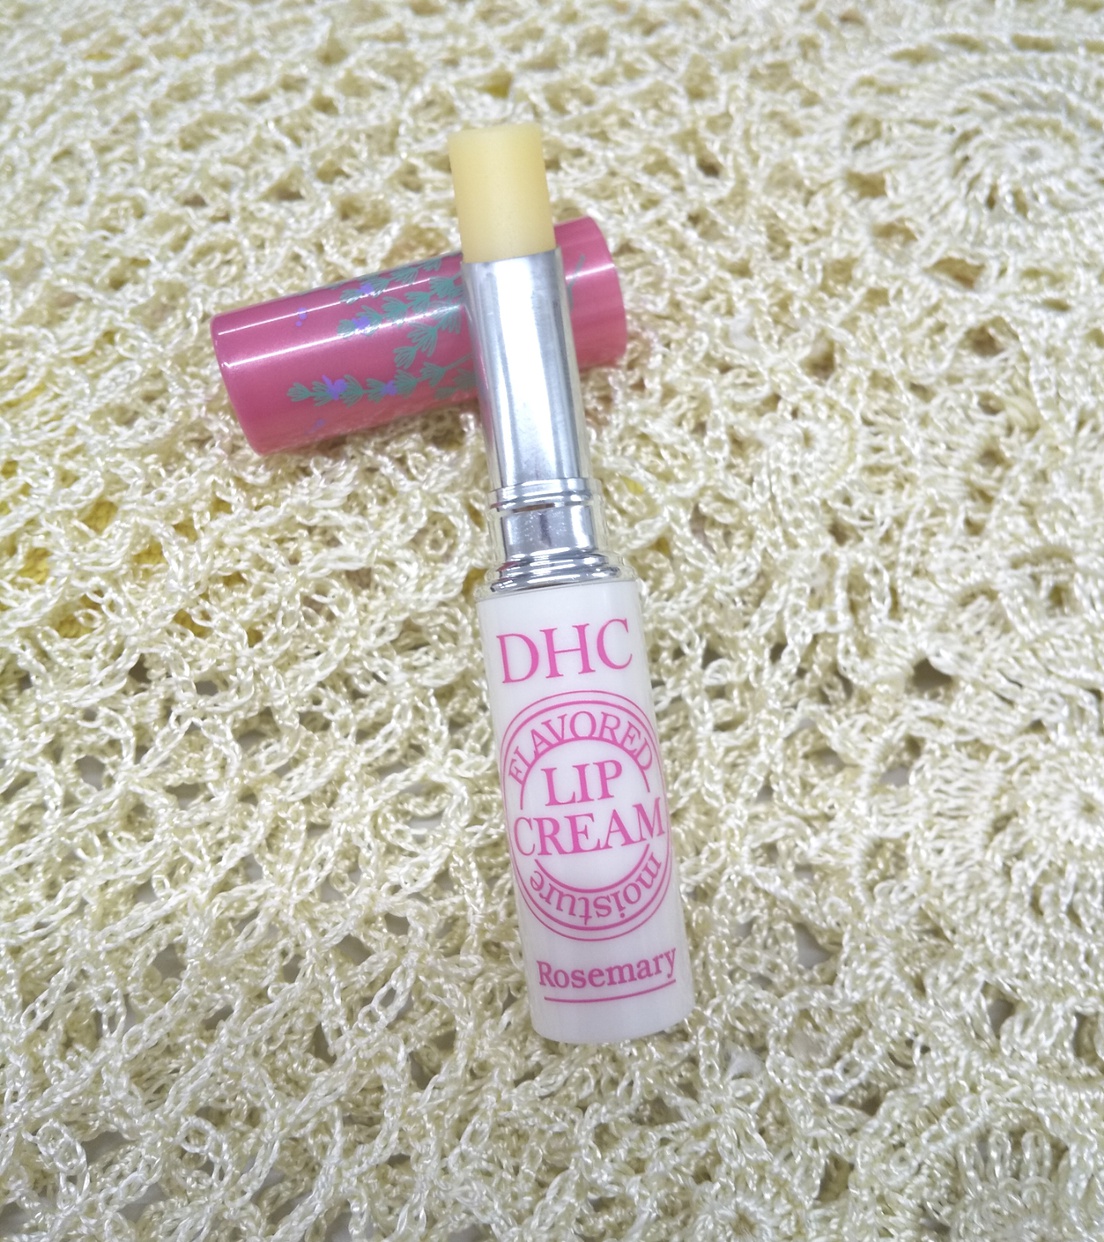 DHC(ディーエイチシー) 香るモイスチュアリップクリームを使ったカサブランカさんのクチコミ画像2